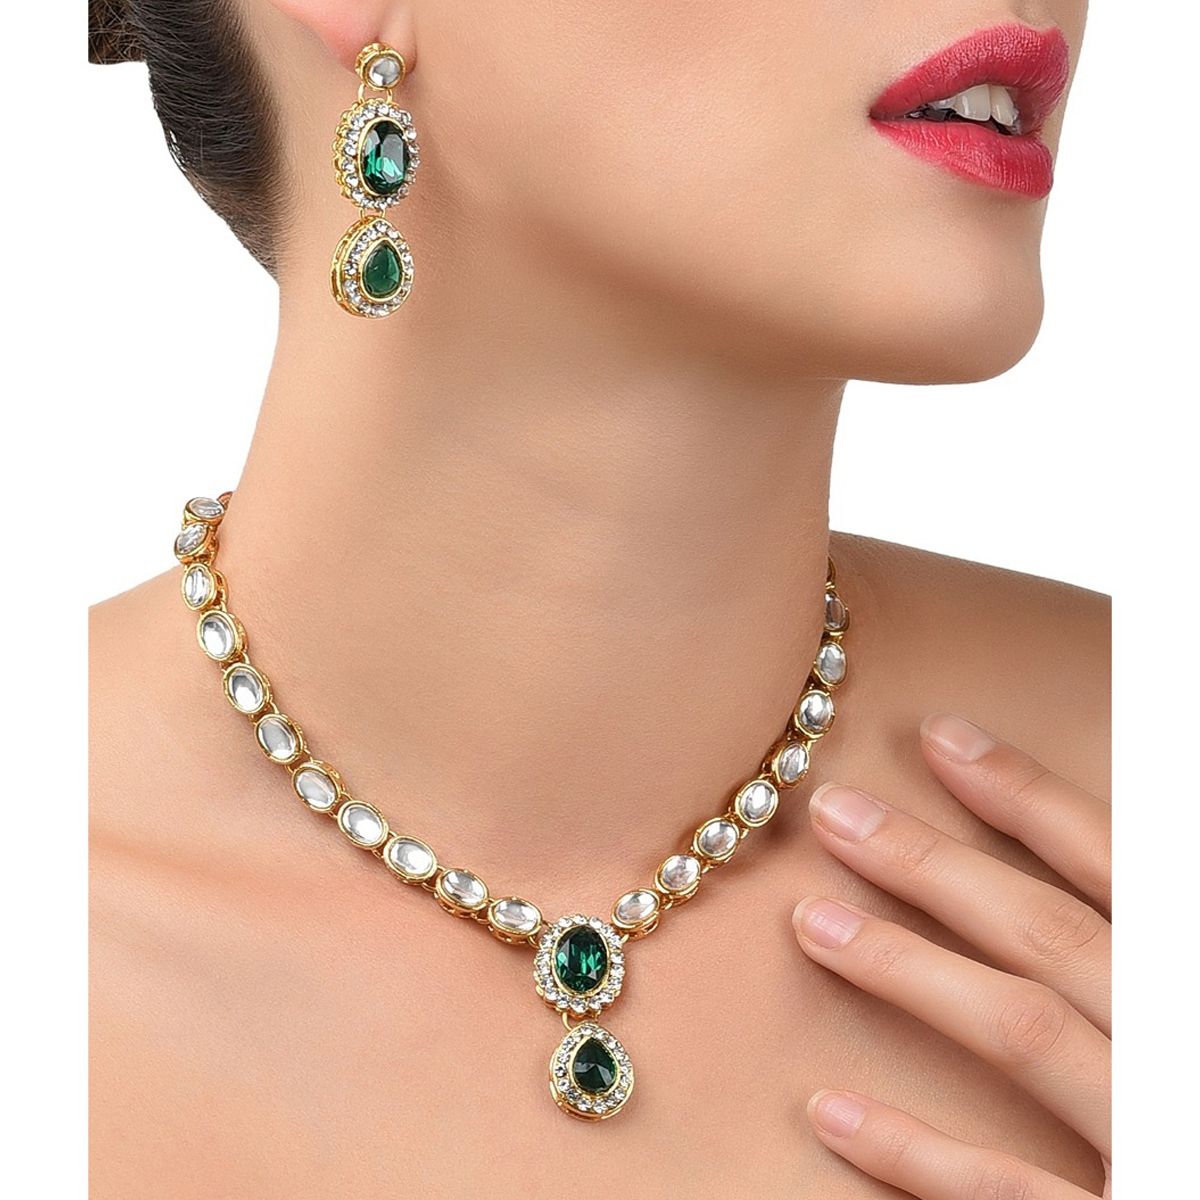 22K Gold Emerald Necklace & Drop Earrings Set - 235-GS3750 in 36.950 Grams